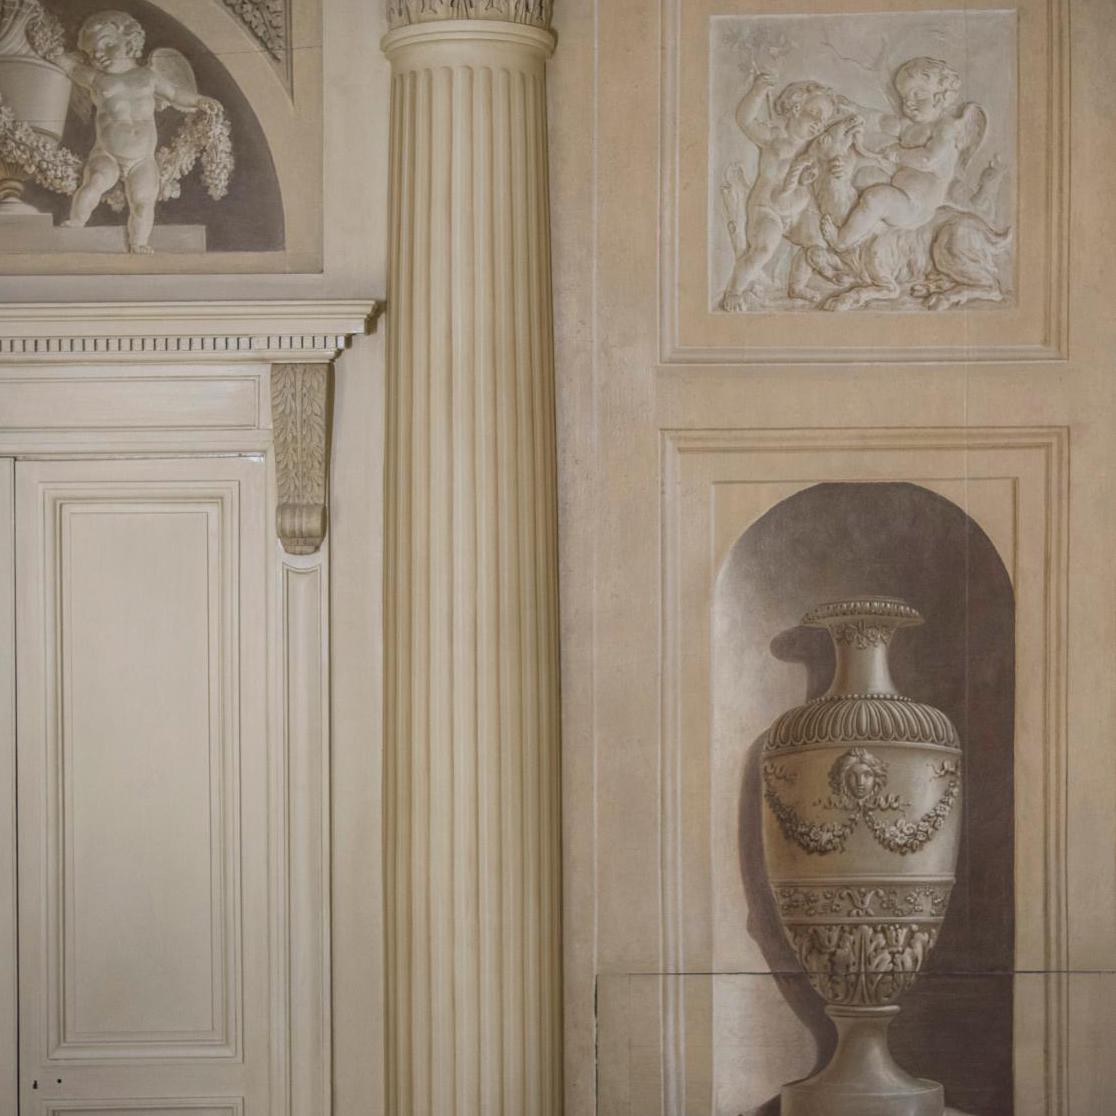 The Chancellerie d’Orléans: A Miraculous Renaissance 